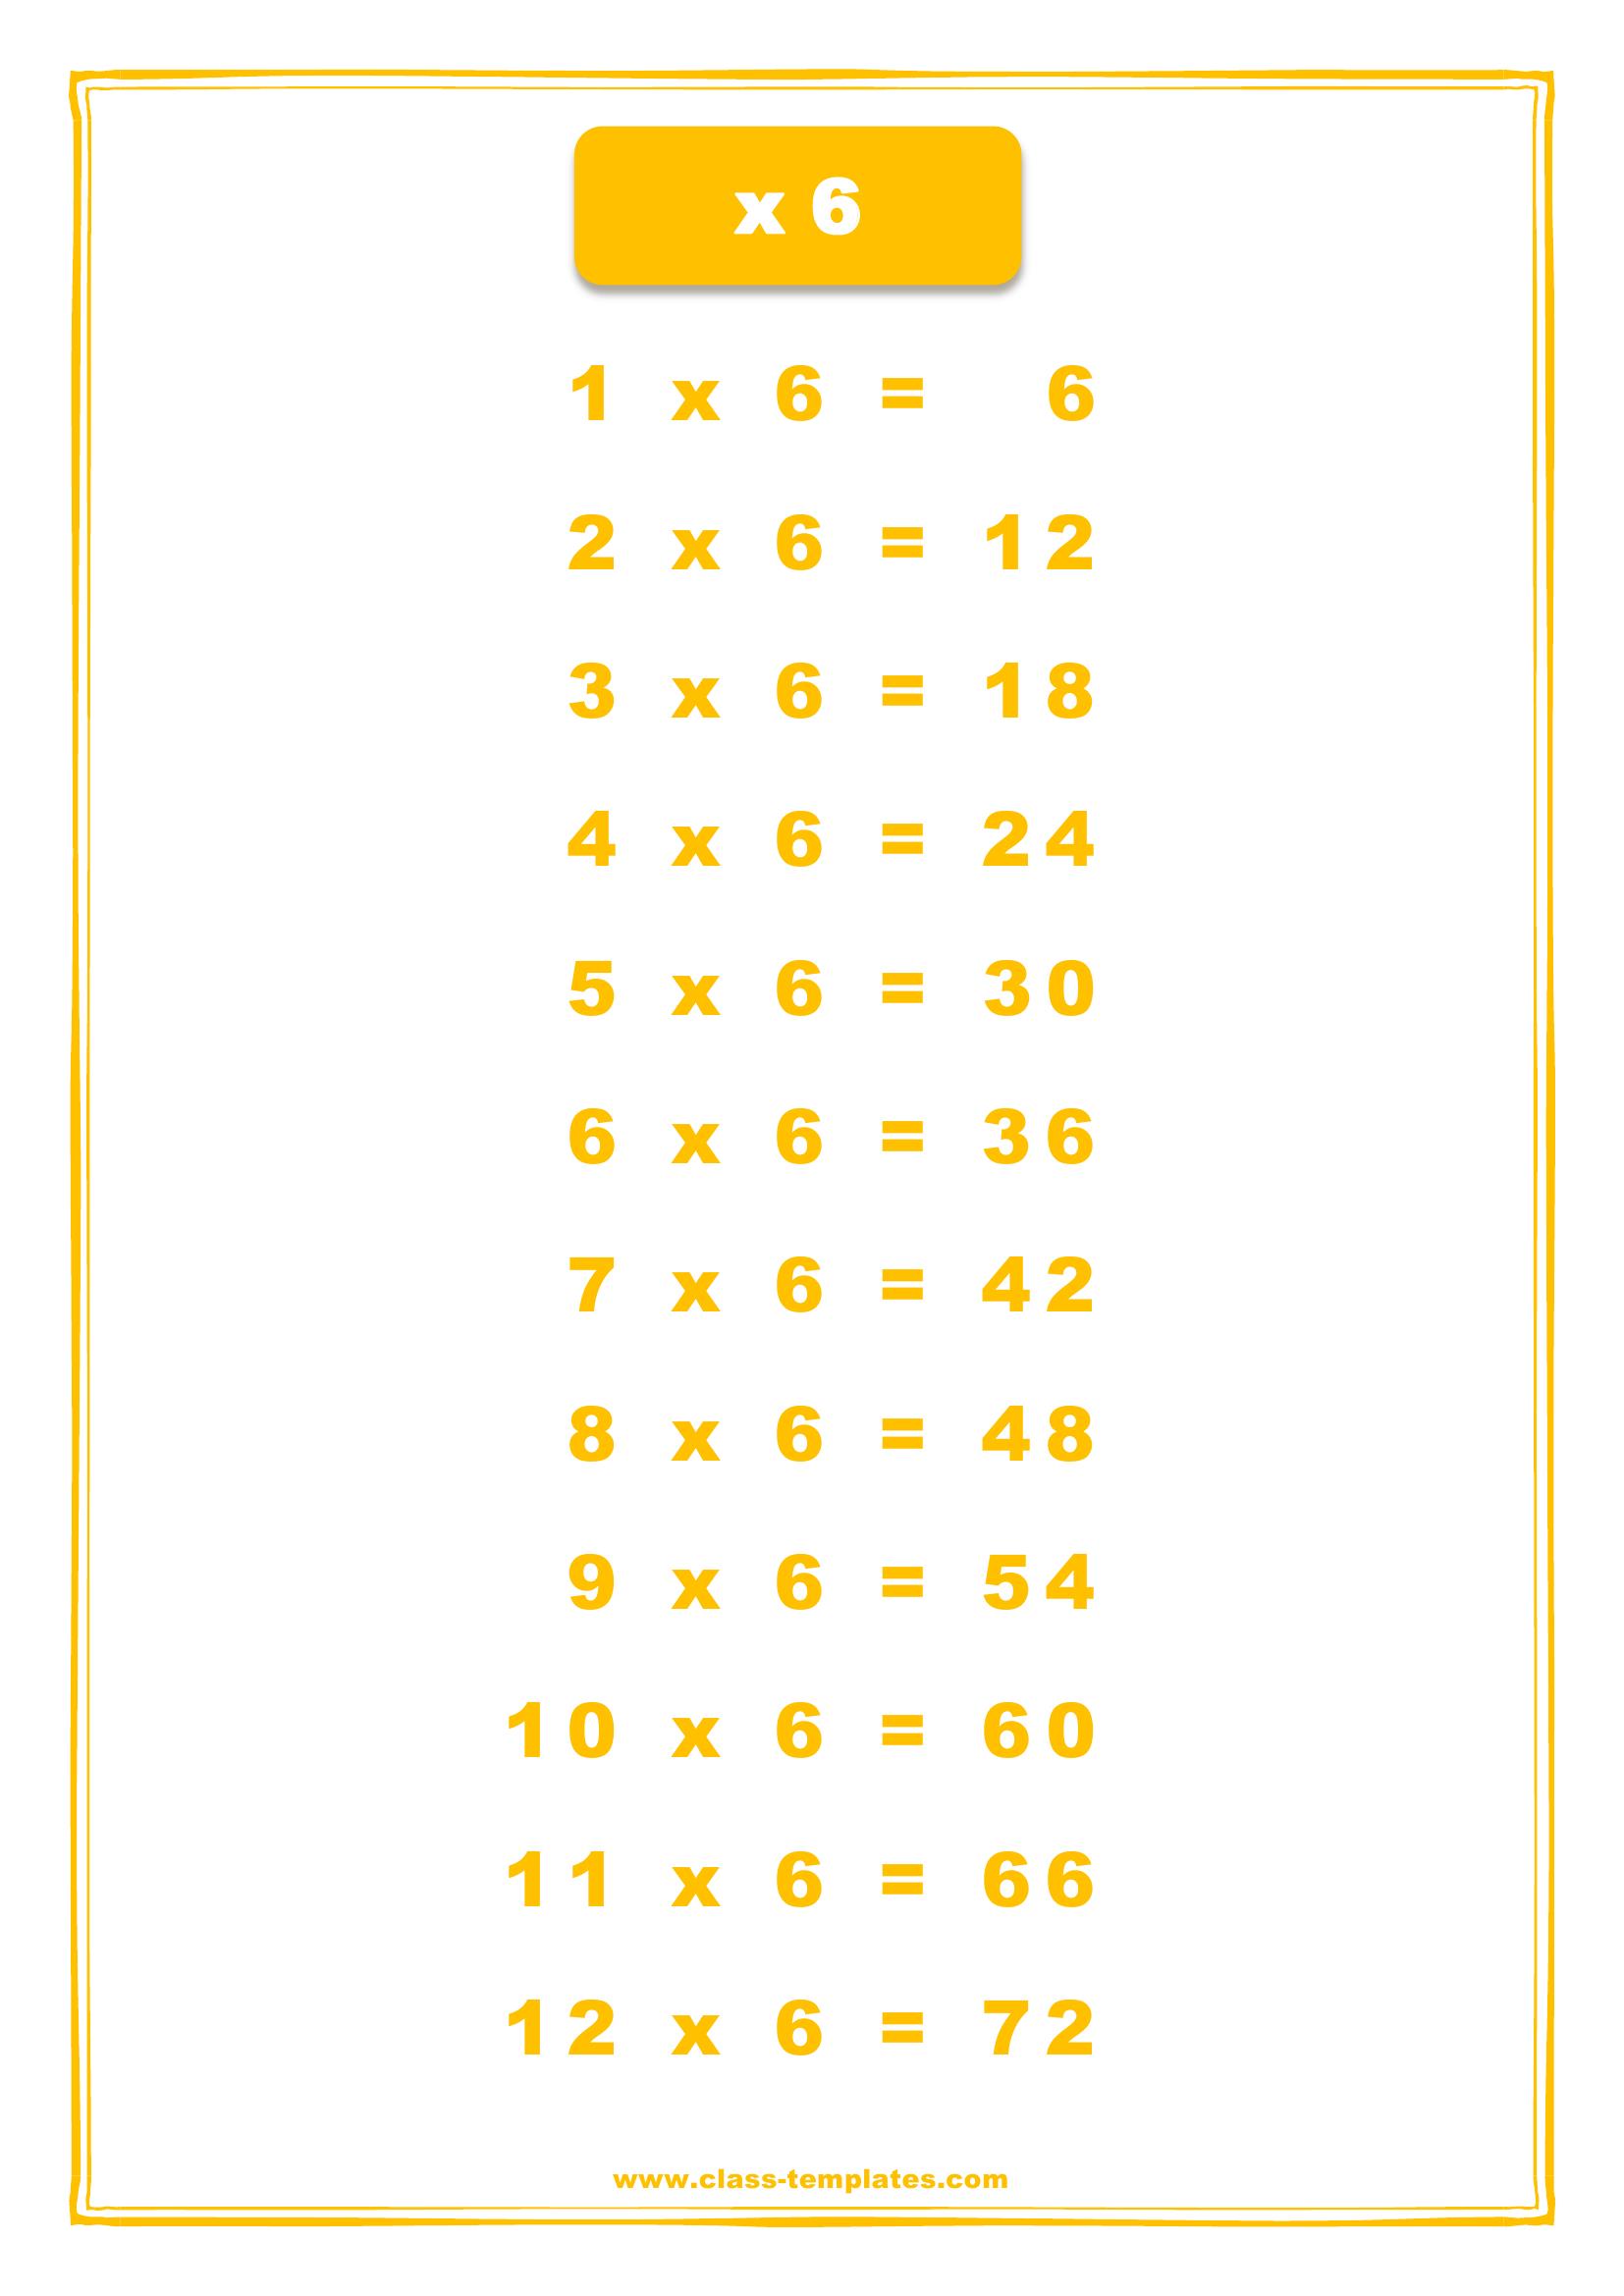 таблица умножения на 6